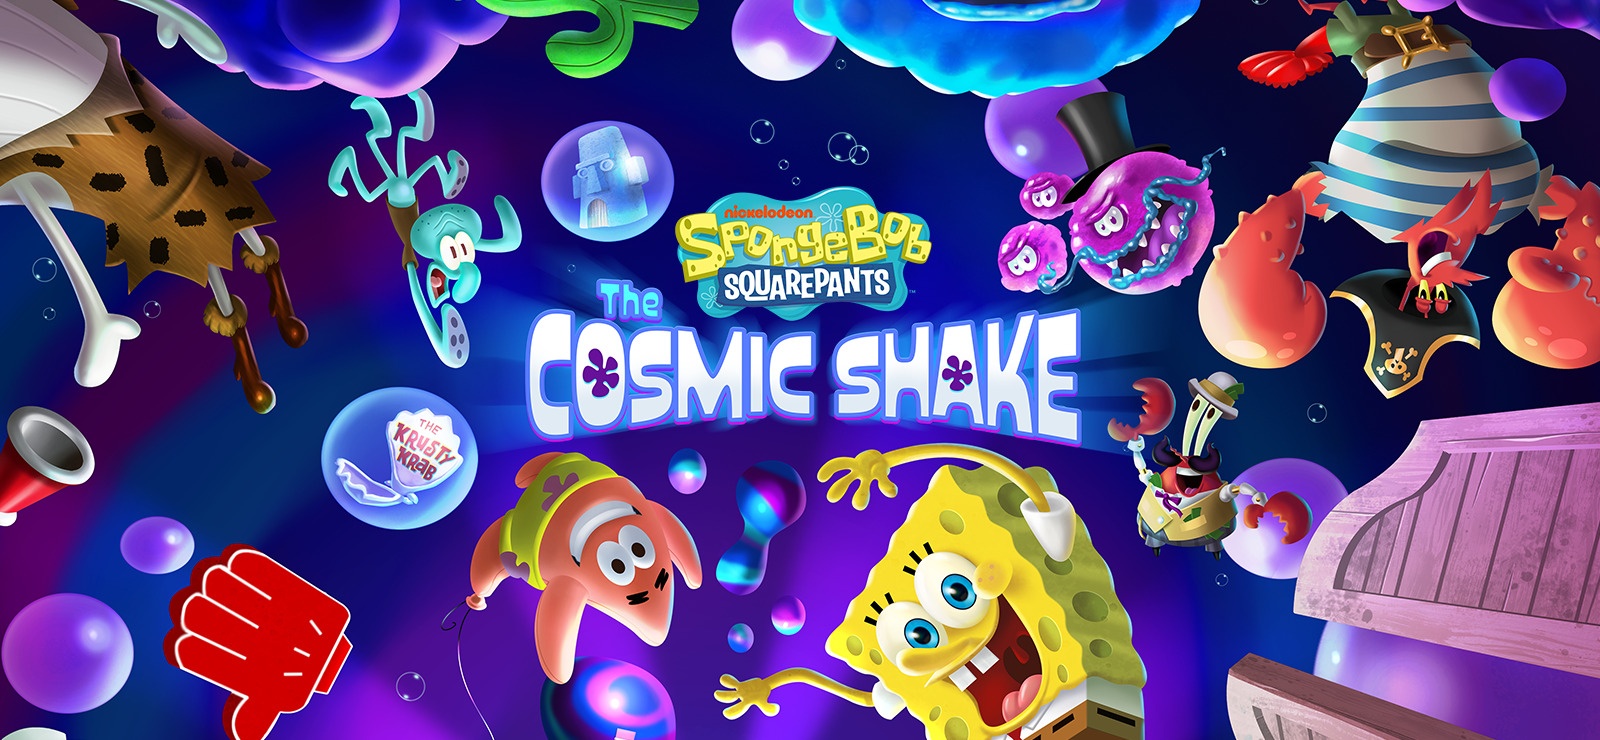 SpongeBob SquarePants: The Cosmic Shake | PS4 Review